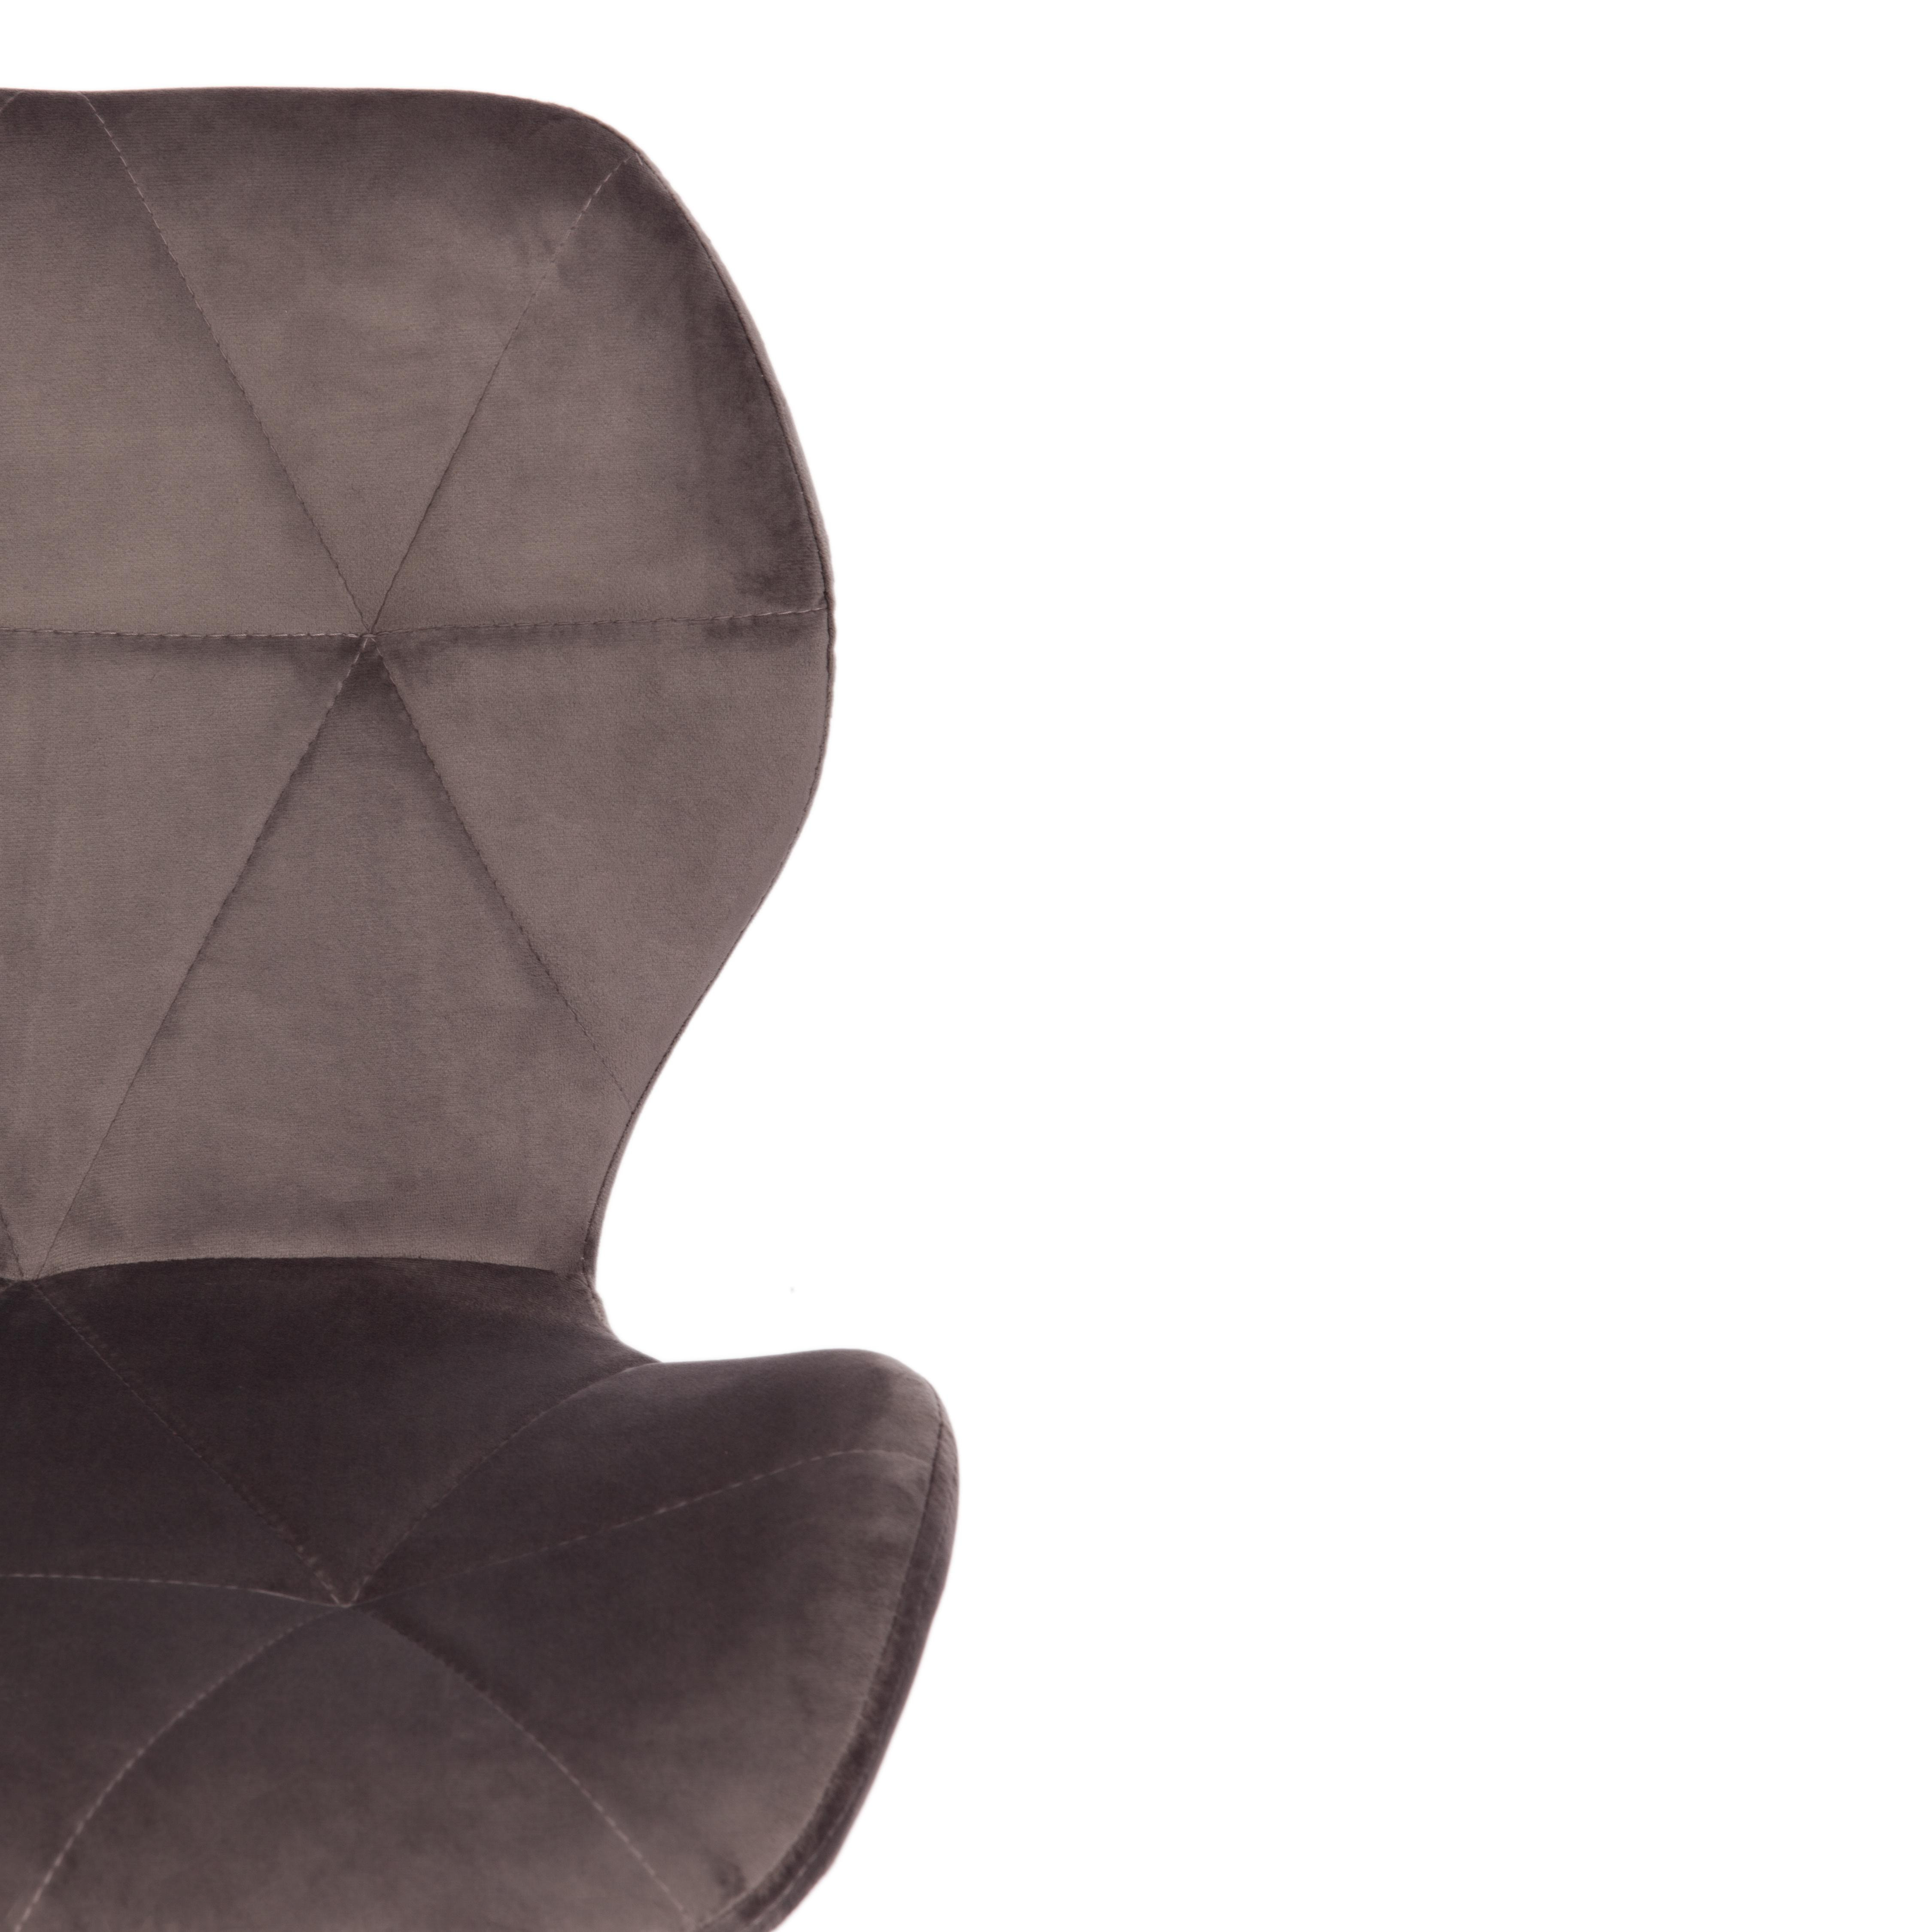 Офисное кресло Recaro (mod.007) металл, вельвет, 45x74+10см, серый (HLR 24)